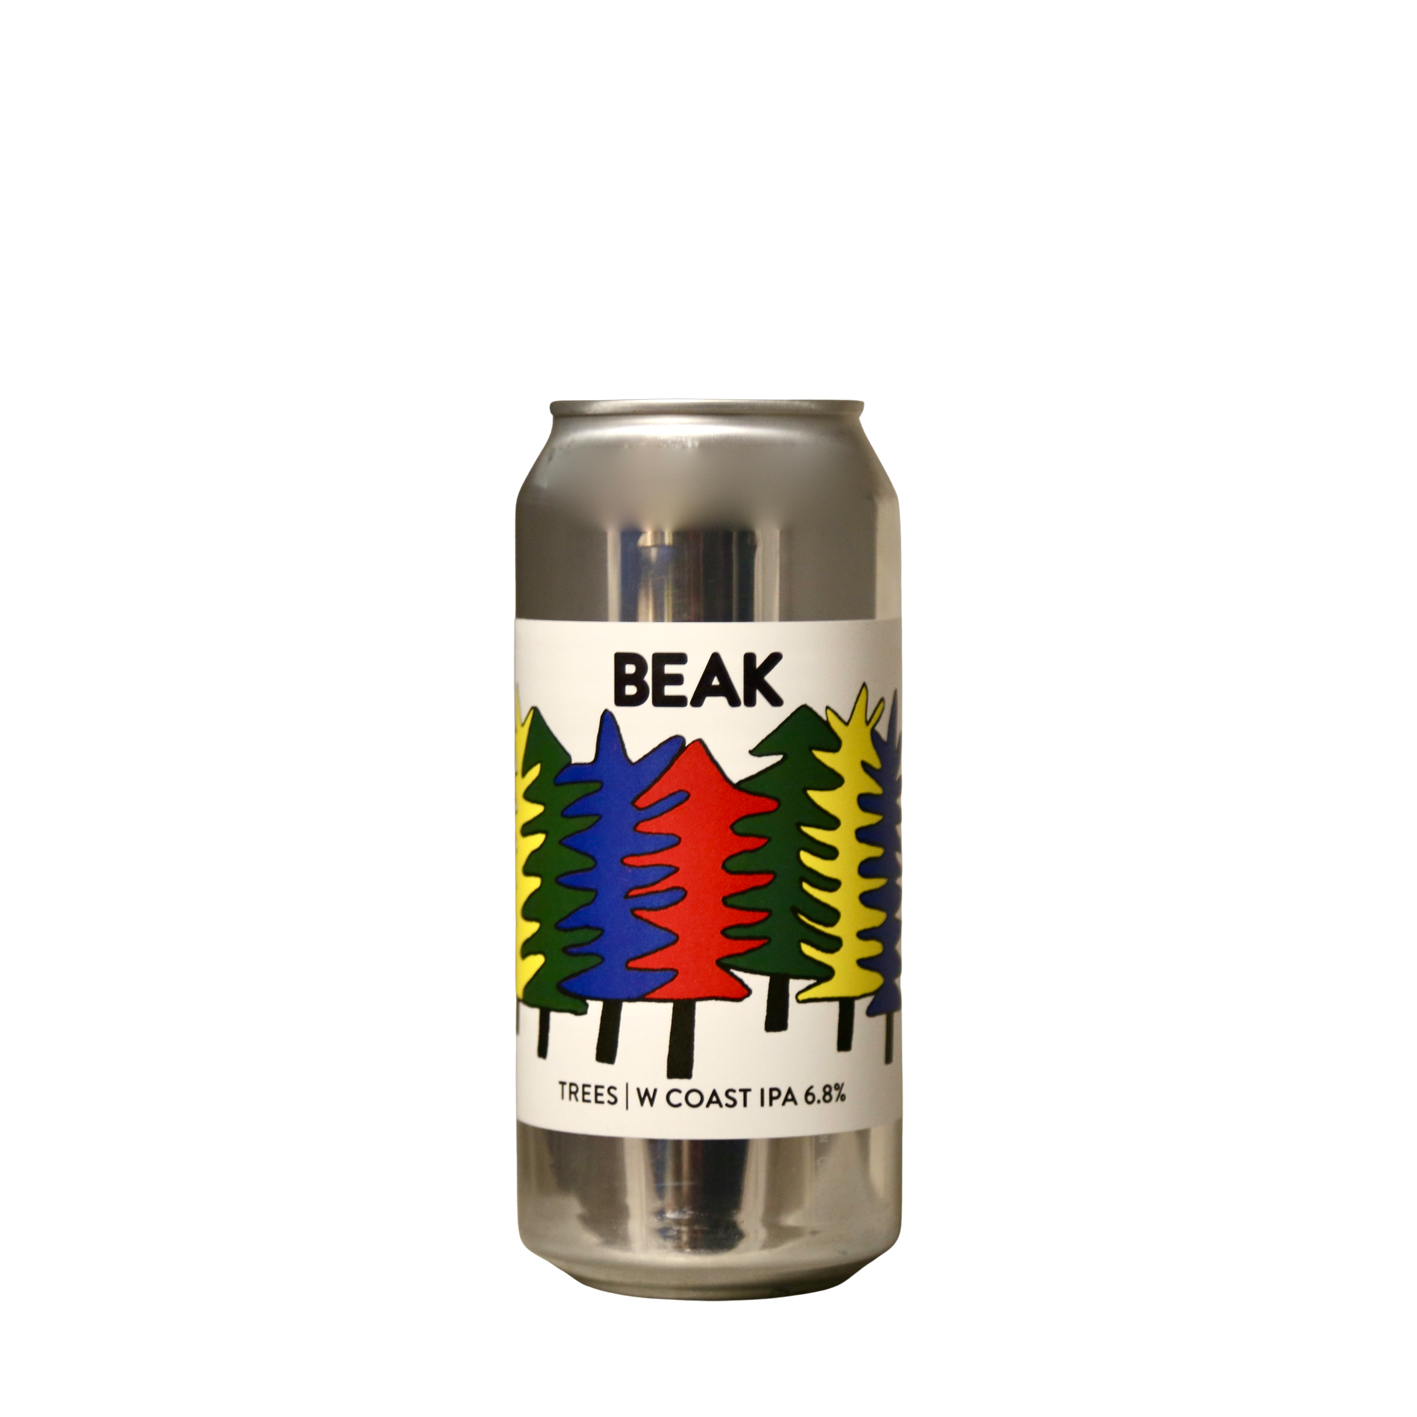 Beak Brewery - Trees W Coast IPA | Buy Online